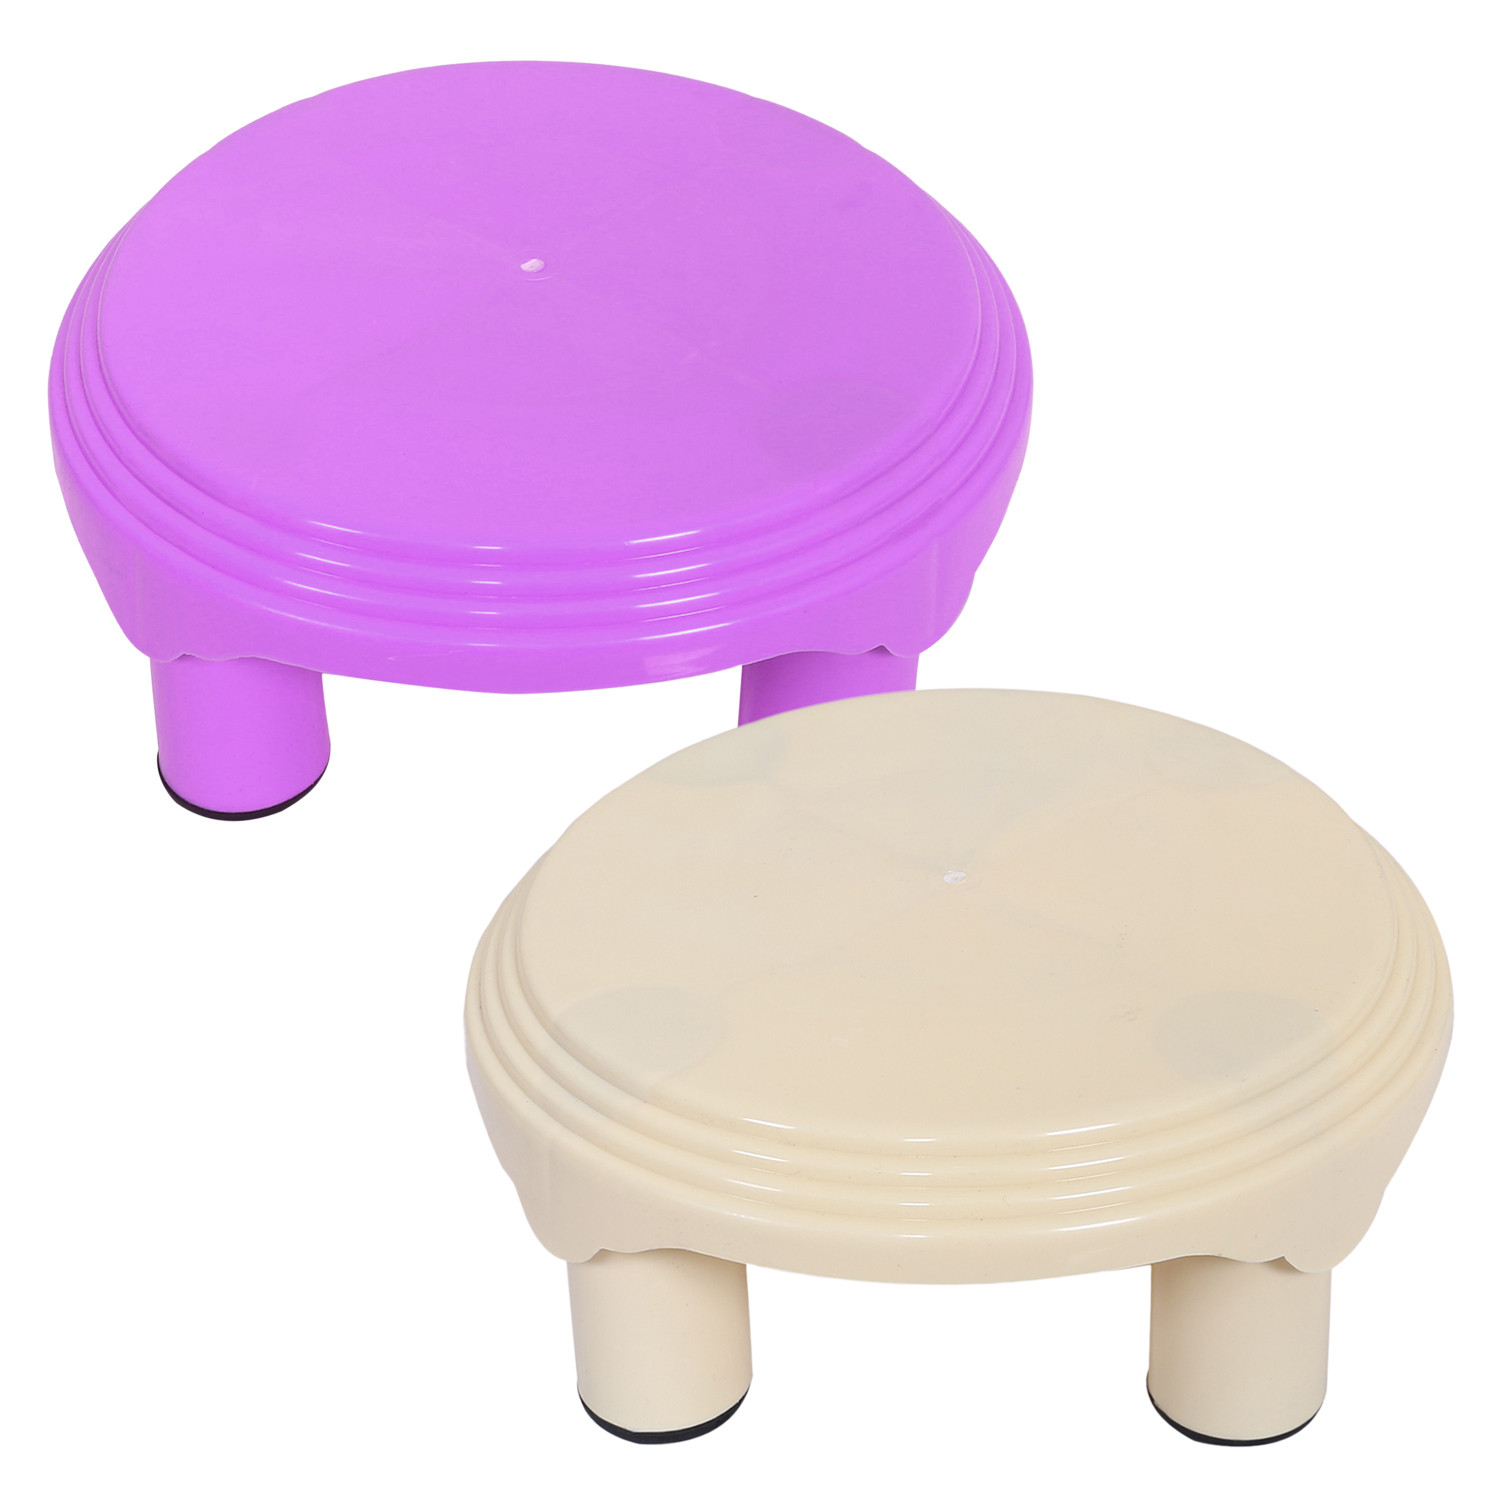 Kuber Industries Bathroom Stool|Plastic Stool|Anti-slip Bathing Stool|Stool for Senior Citizen|Patla for Bathroom|Pack of 2 (Pink & Cream)